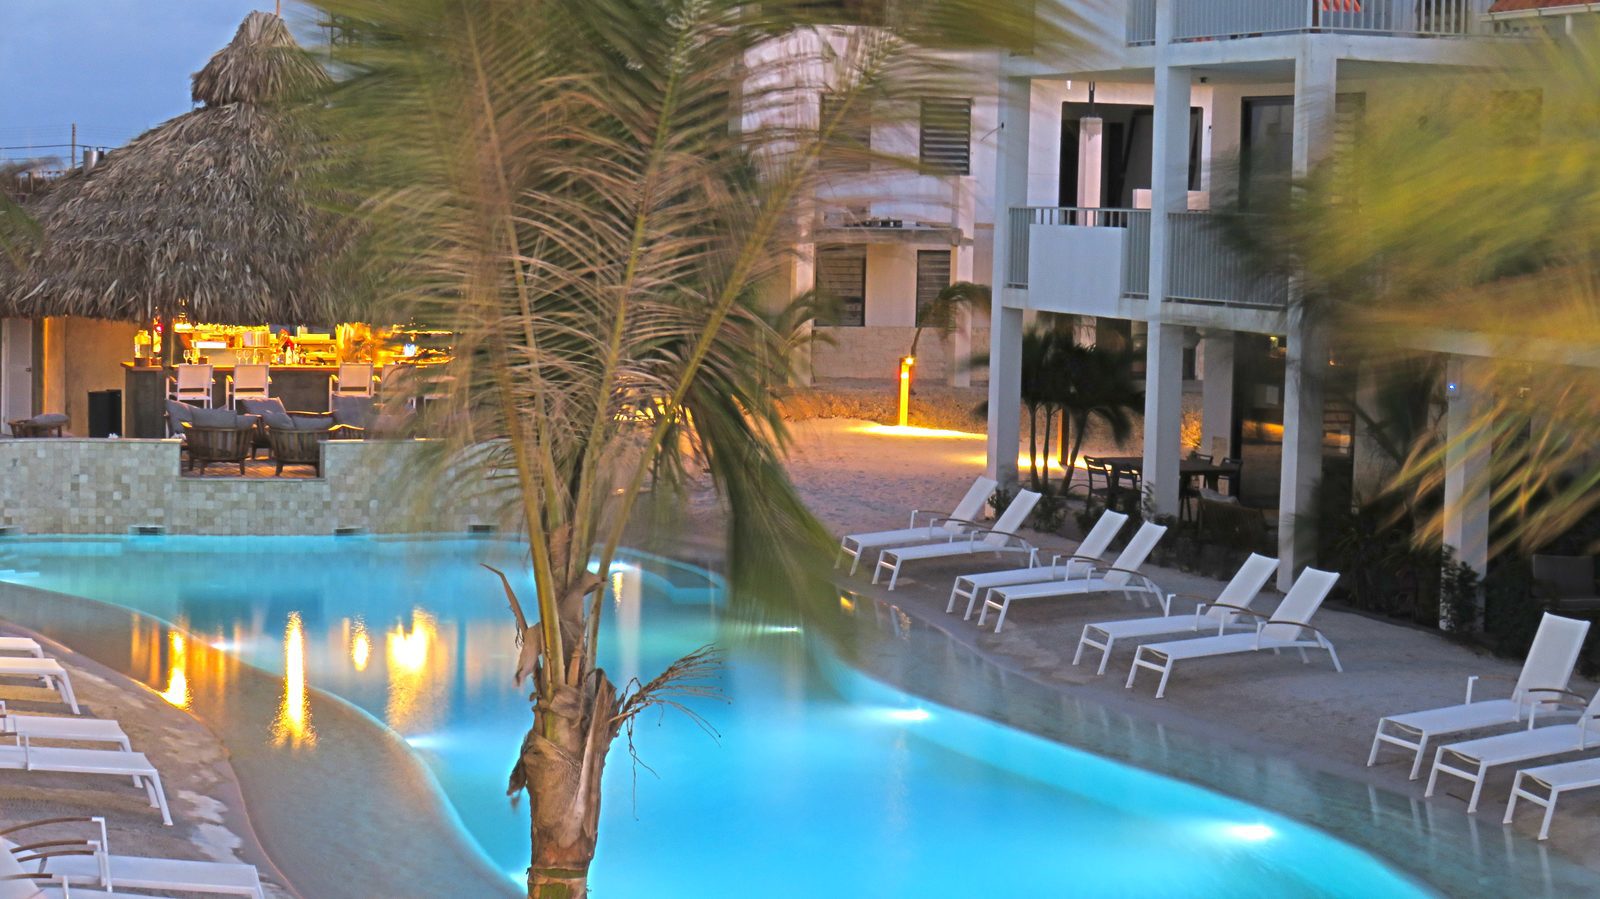 En tant que client du Resort Bonaire, vous pourrez profiter des multiples installations de notre parc. Louez du matériel de plongée ou venez nager dans notre piscine !